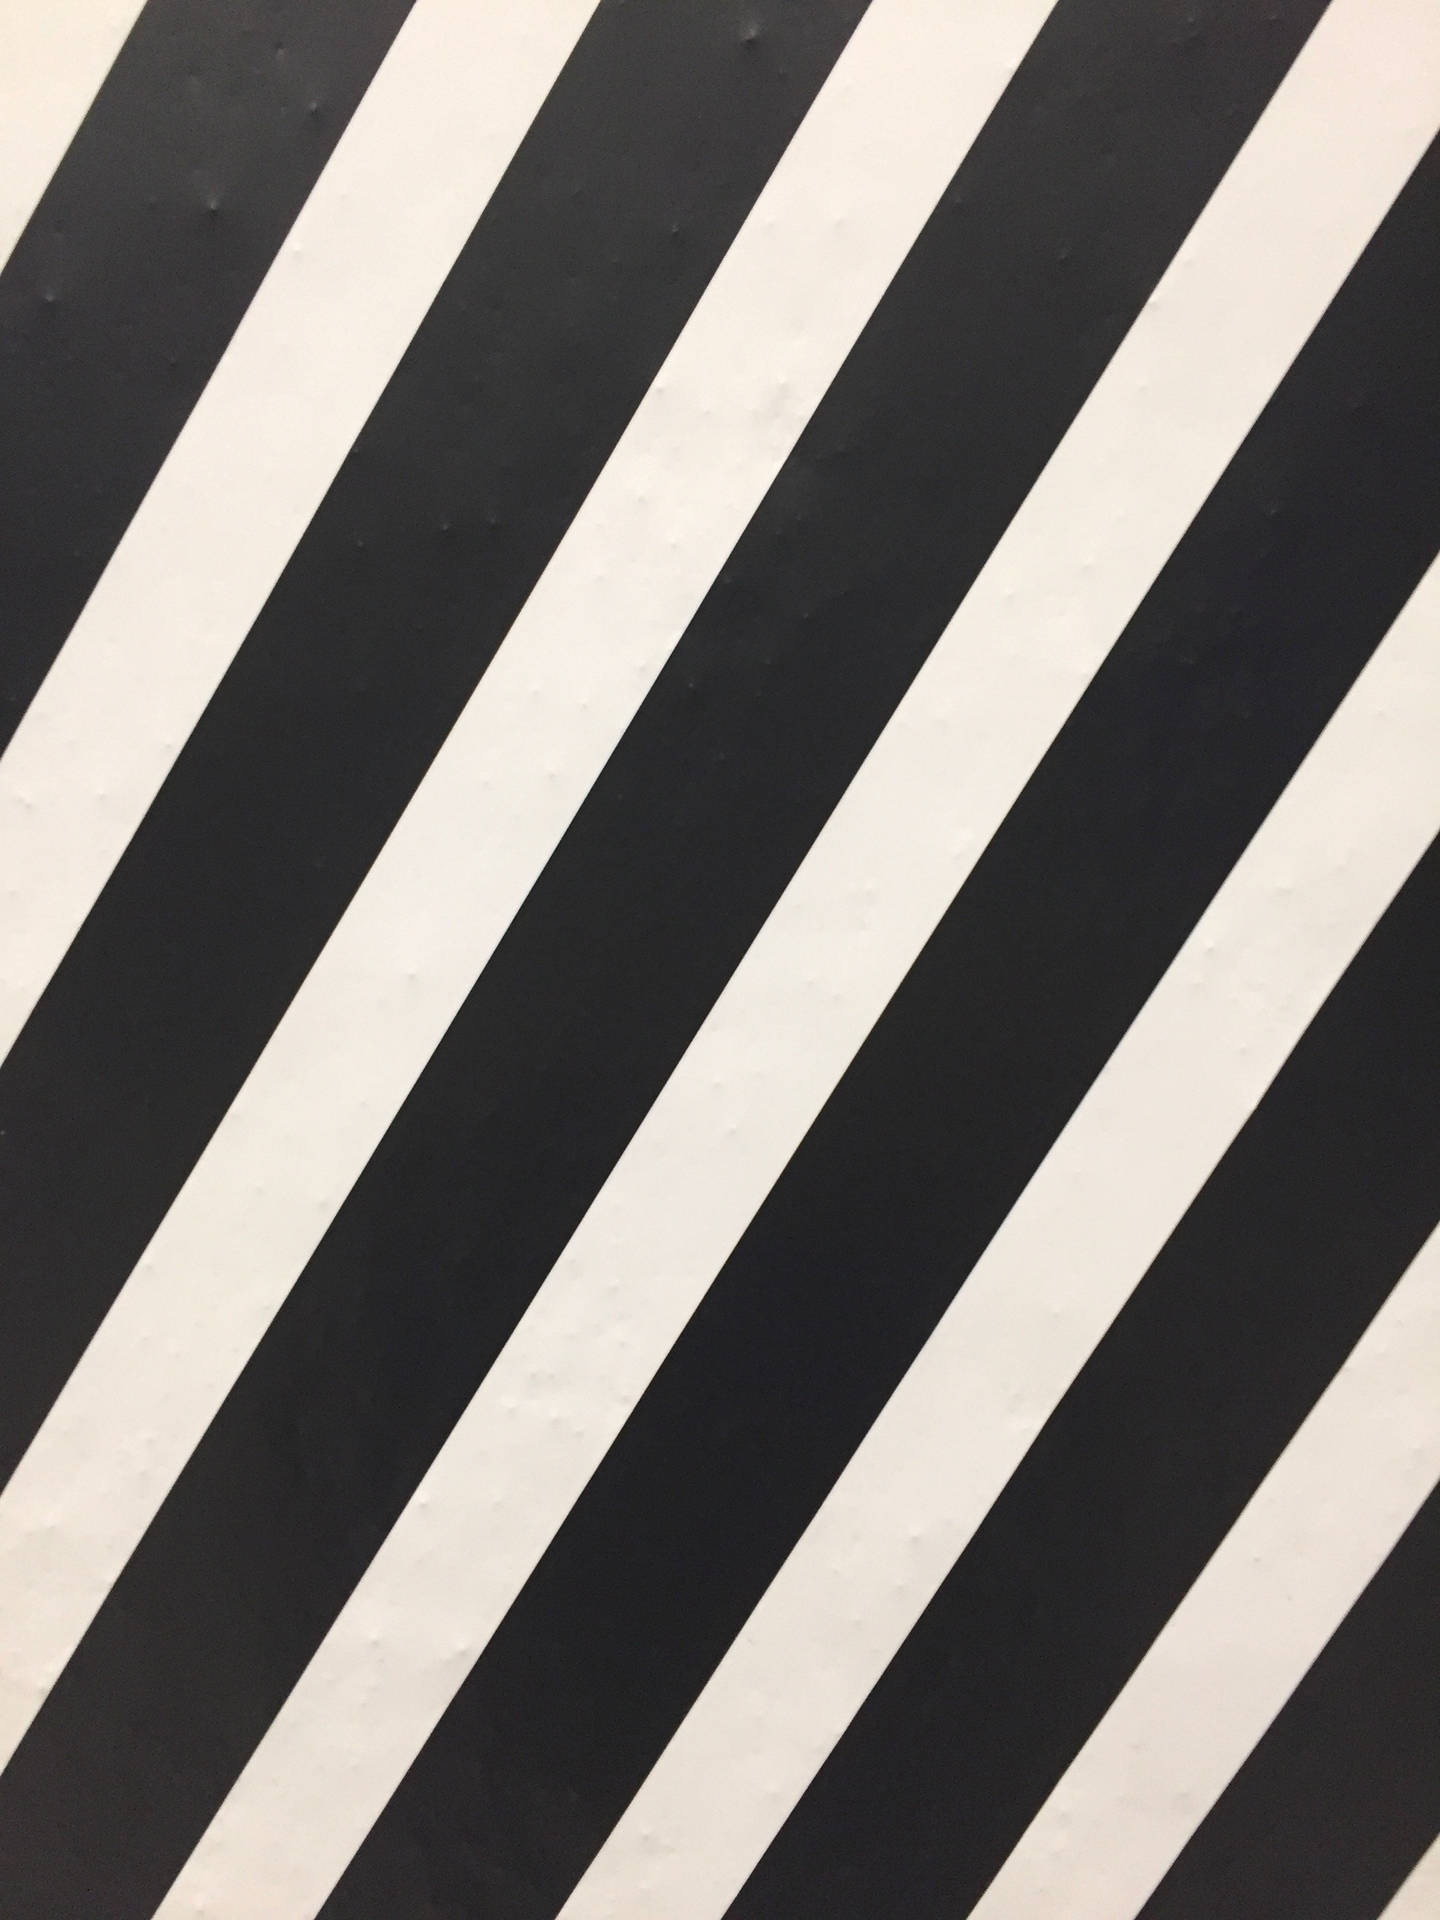 Black and White Zebra Stripes Wallpaper